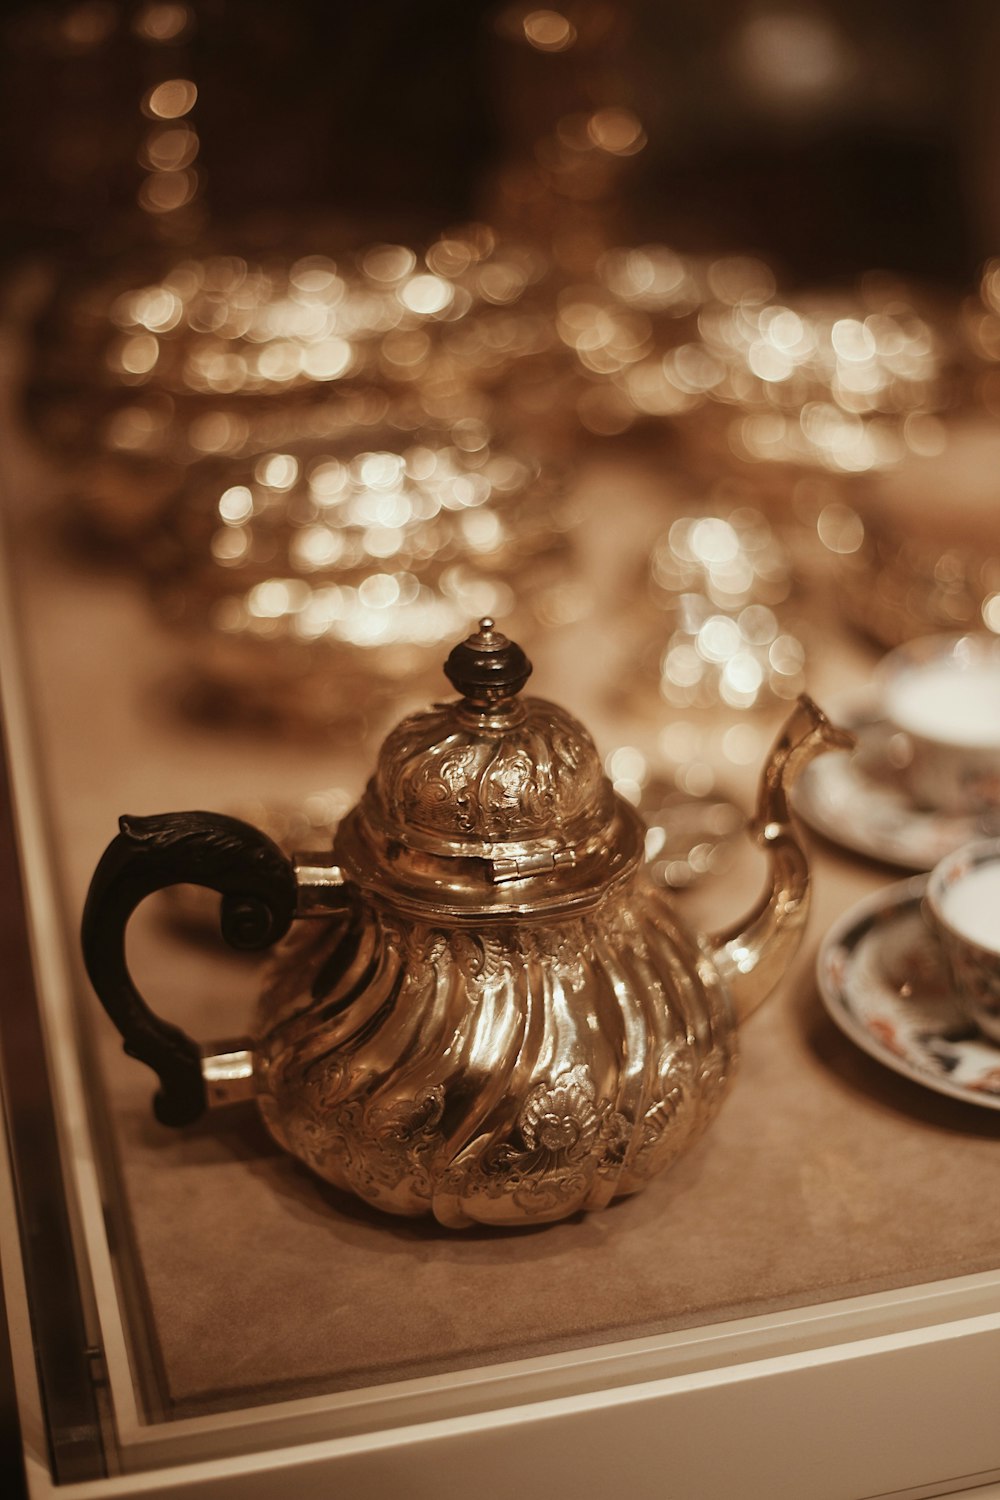 a teapot on a table